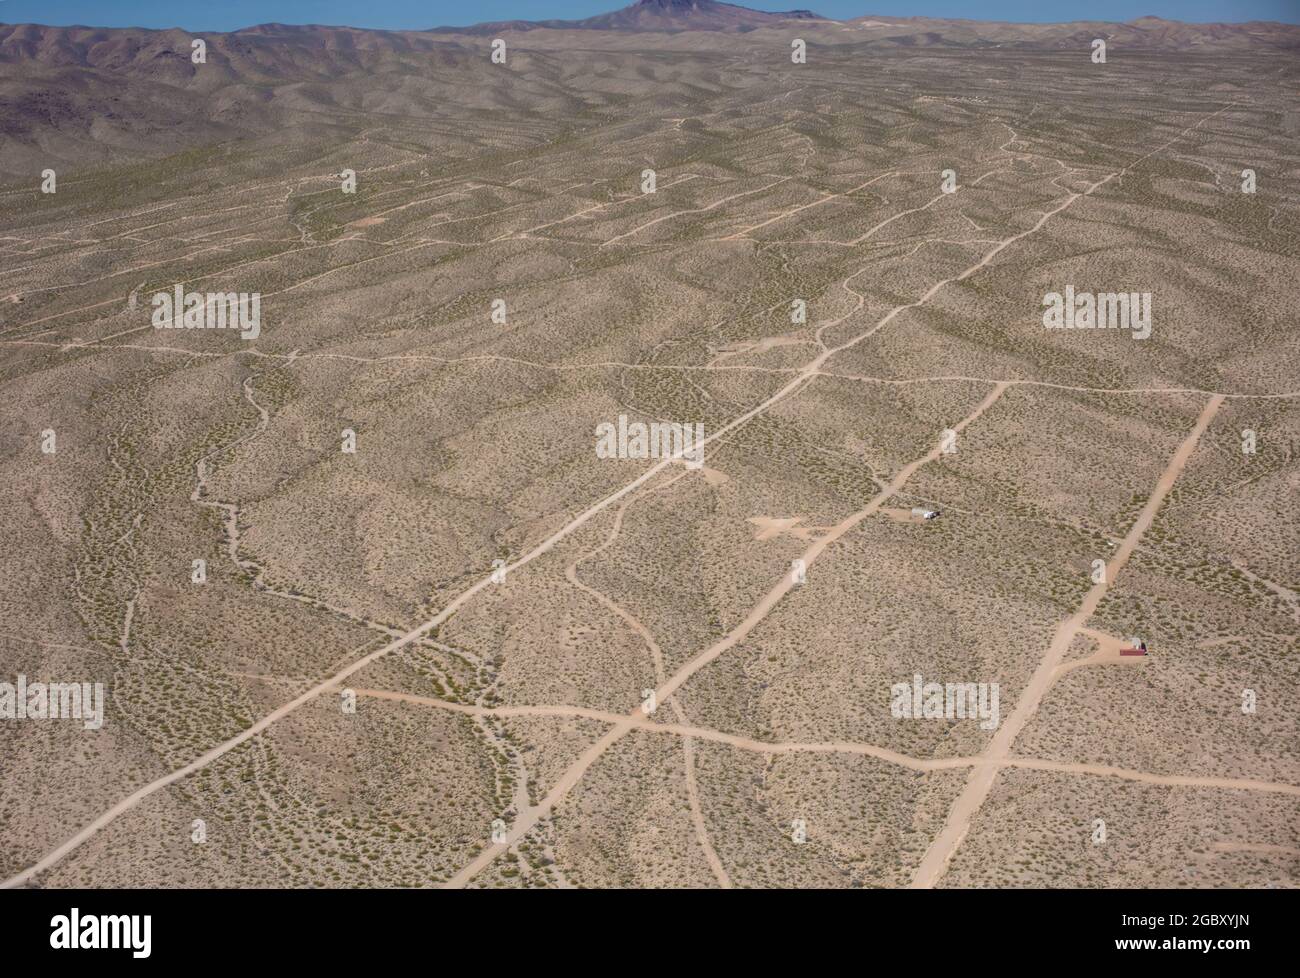 Schotterstraßen in Rasterlinien-Anordnung markieren eine geplante neue Siedlung in der Wüste in der Nähe von Las Vegas, Nevada, USA mit wenigen Abnehmern Stockfoto